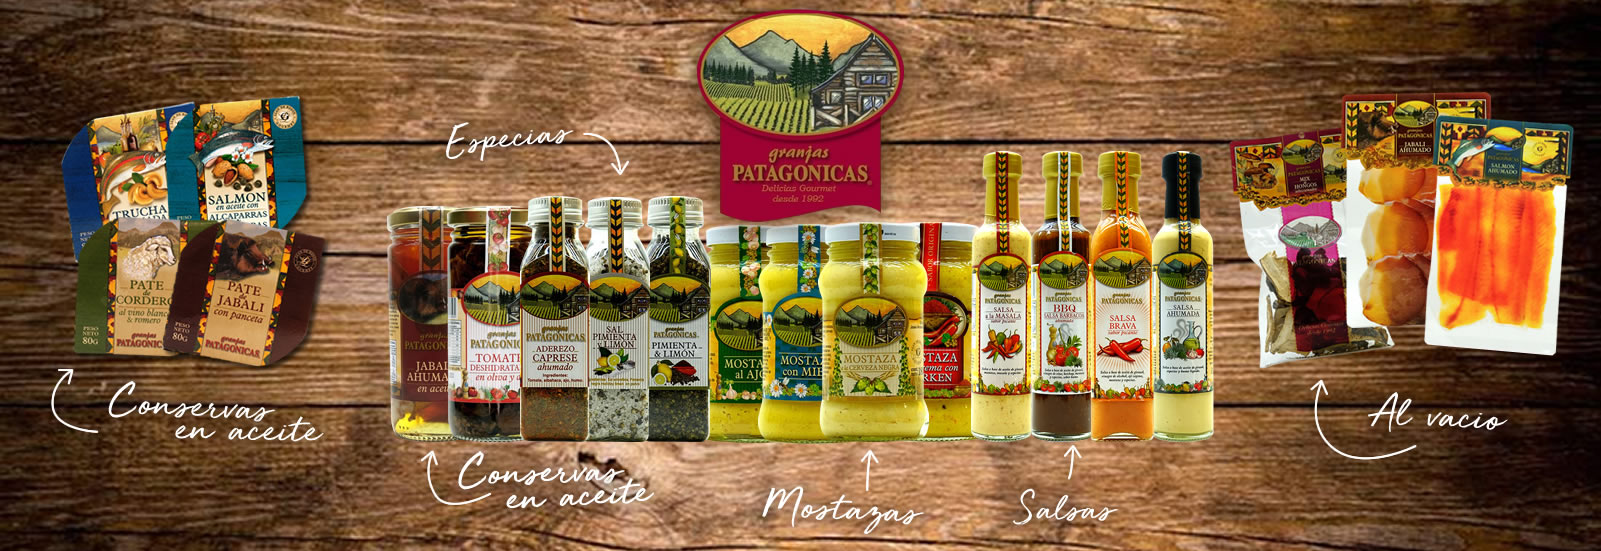 mostazas, salsas, especias, conservas de Granjas Patagonicas en TINA & CO.